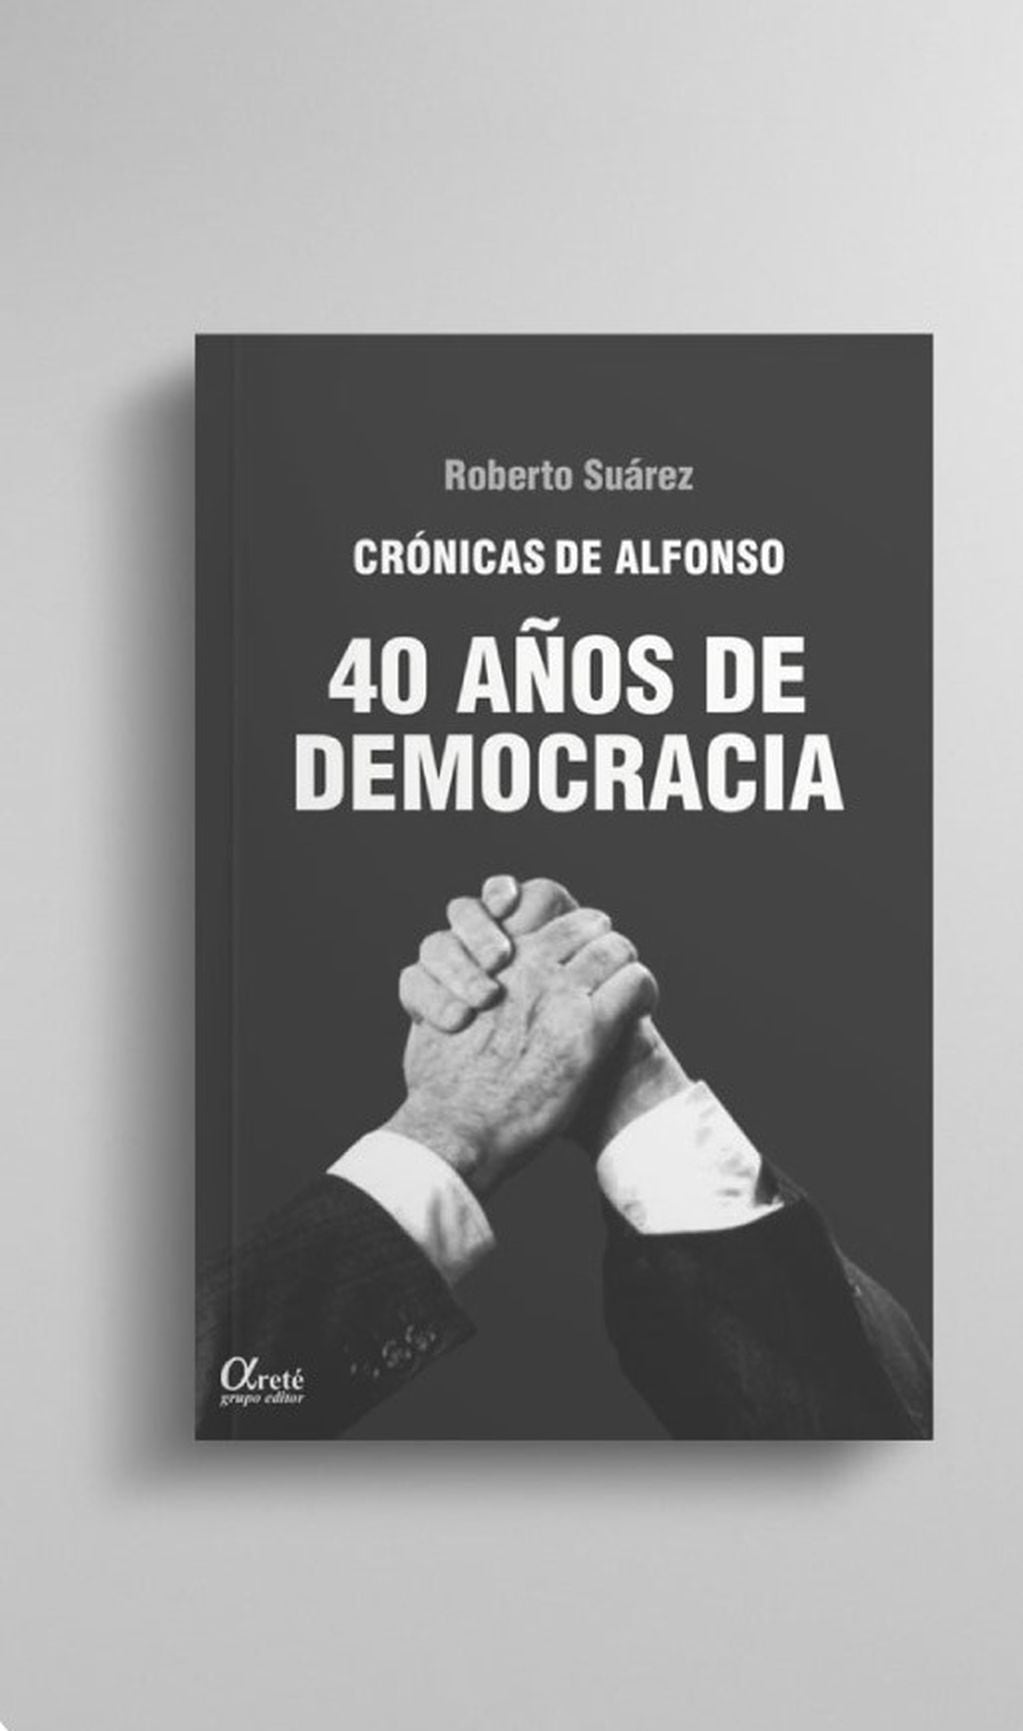 Libro de Roberto Suárez.